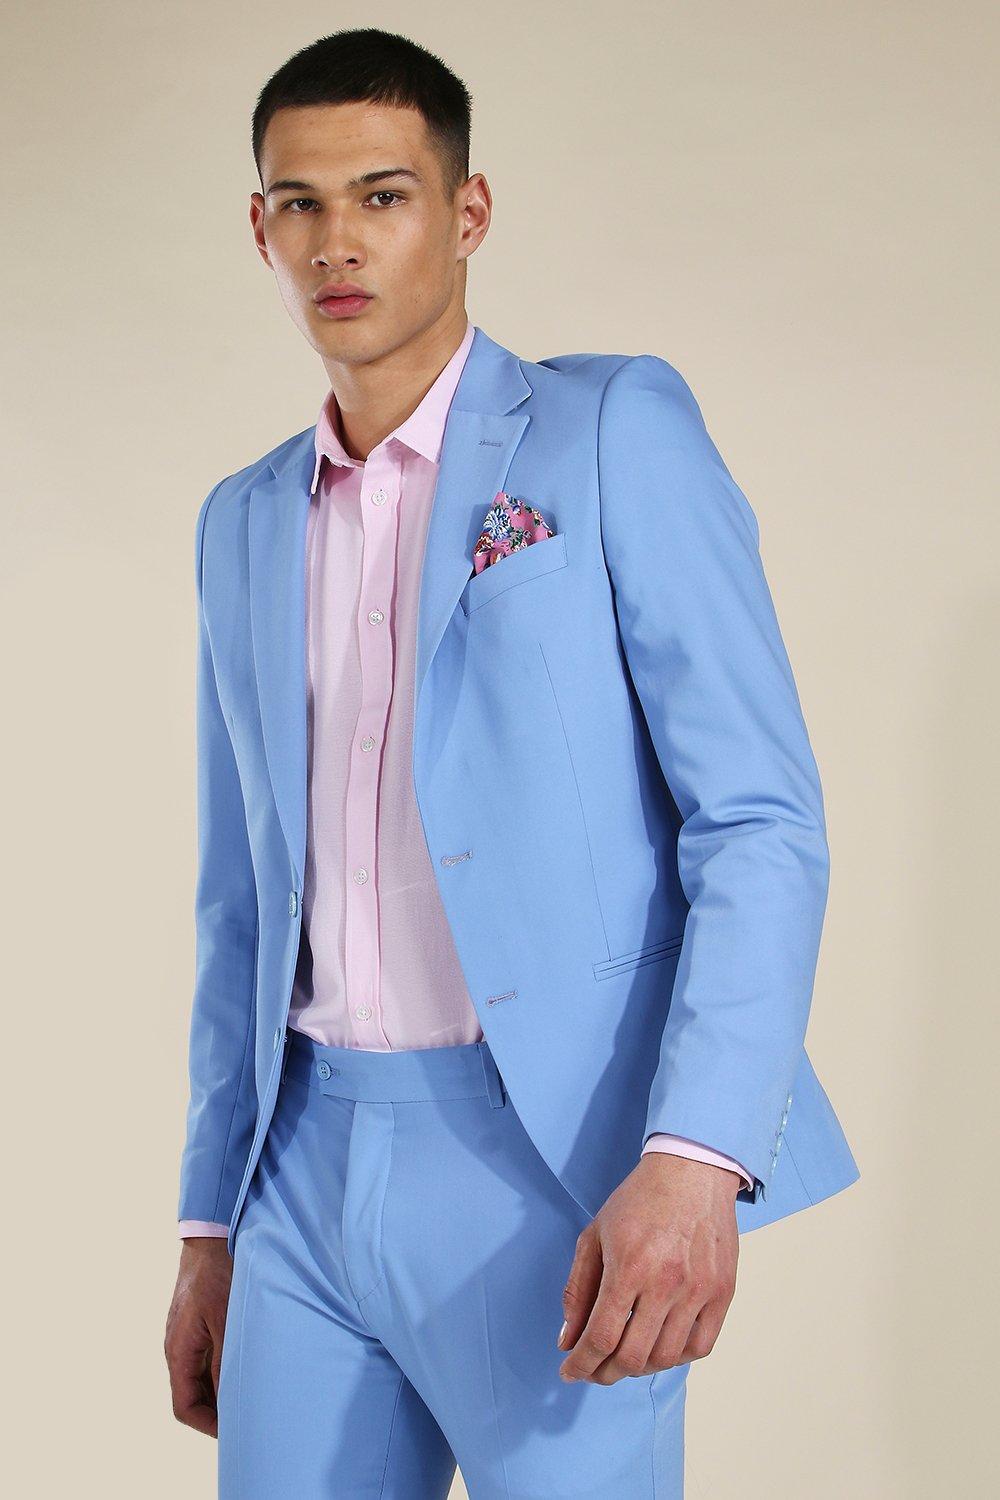 blue suit pink shirt